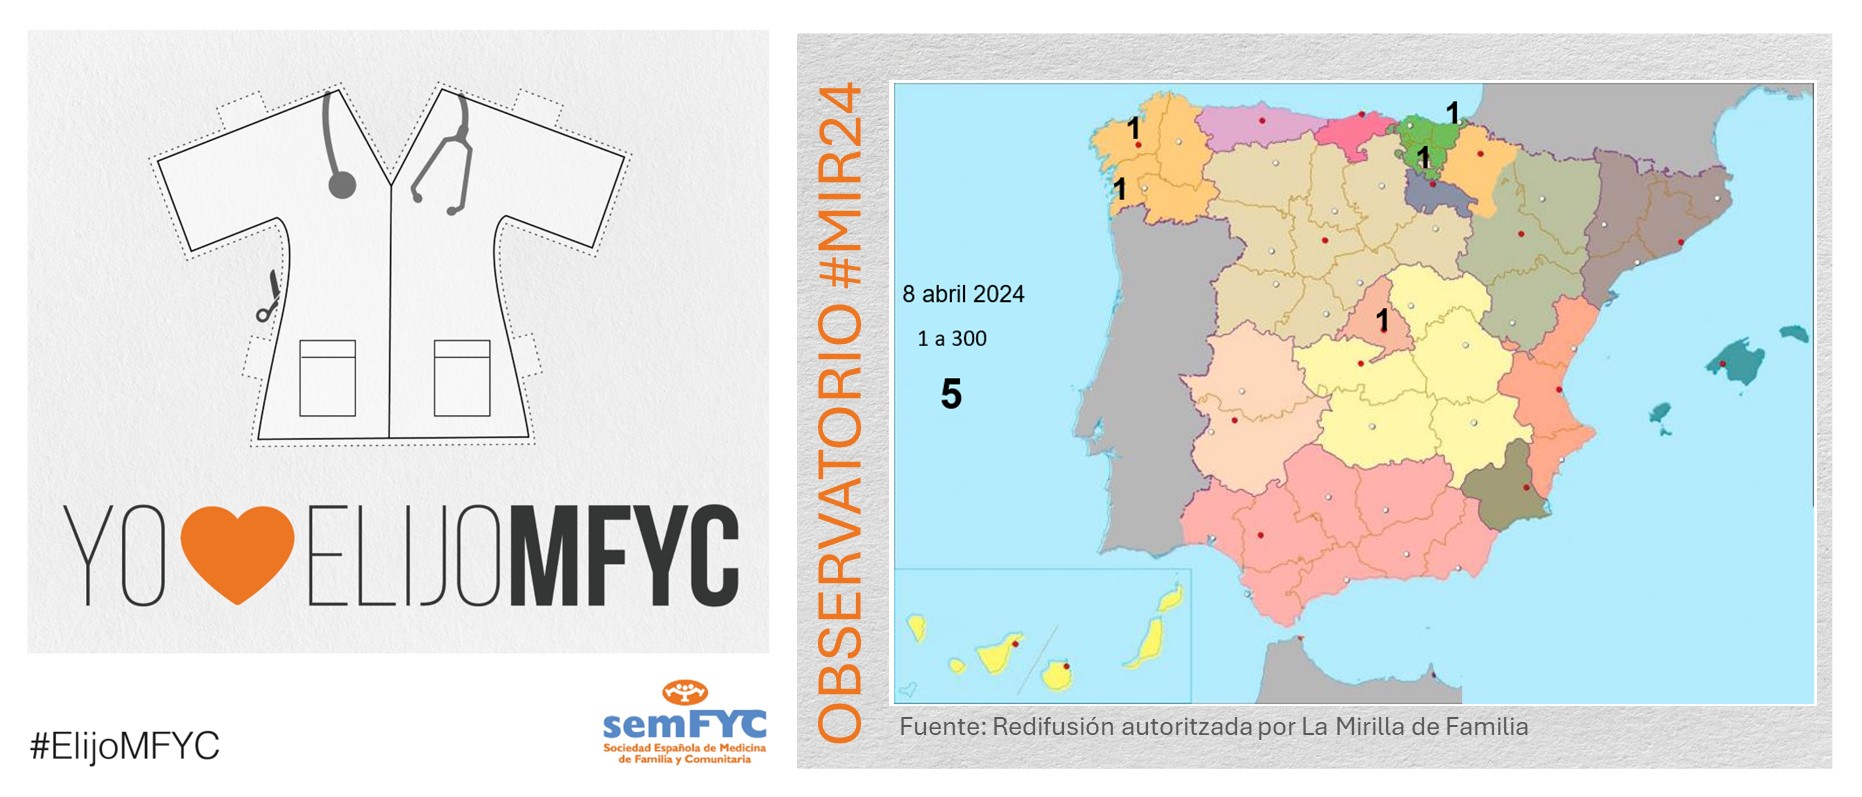 OBSERVATORIO ELIJOMFYC: Se cierra la primera sesión de elección de plaza para futuros residentes con 5 nuevos futuros MFYC